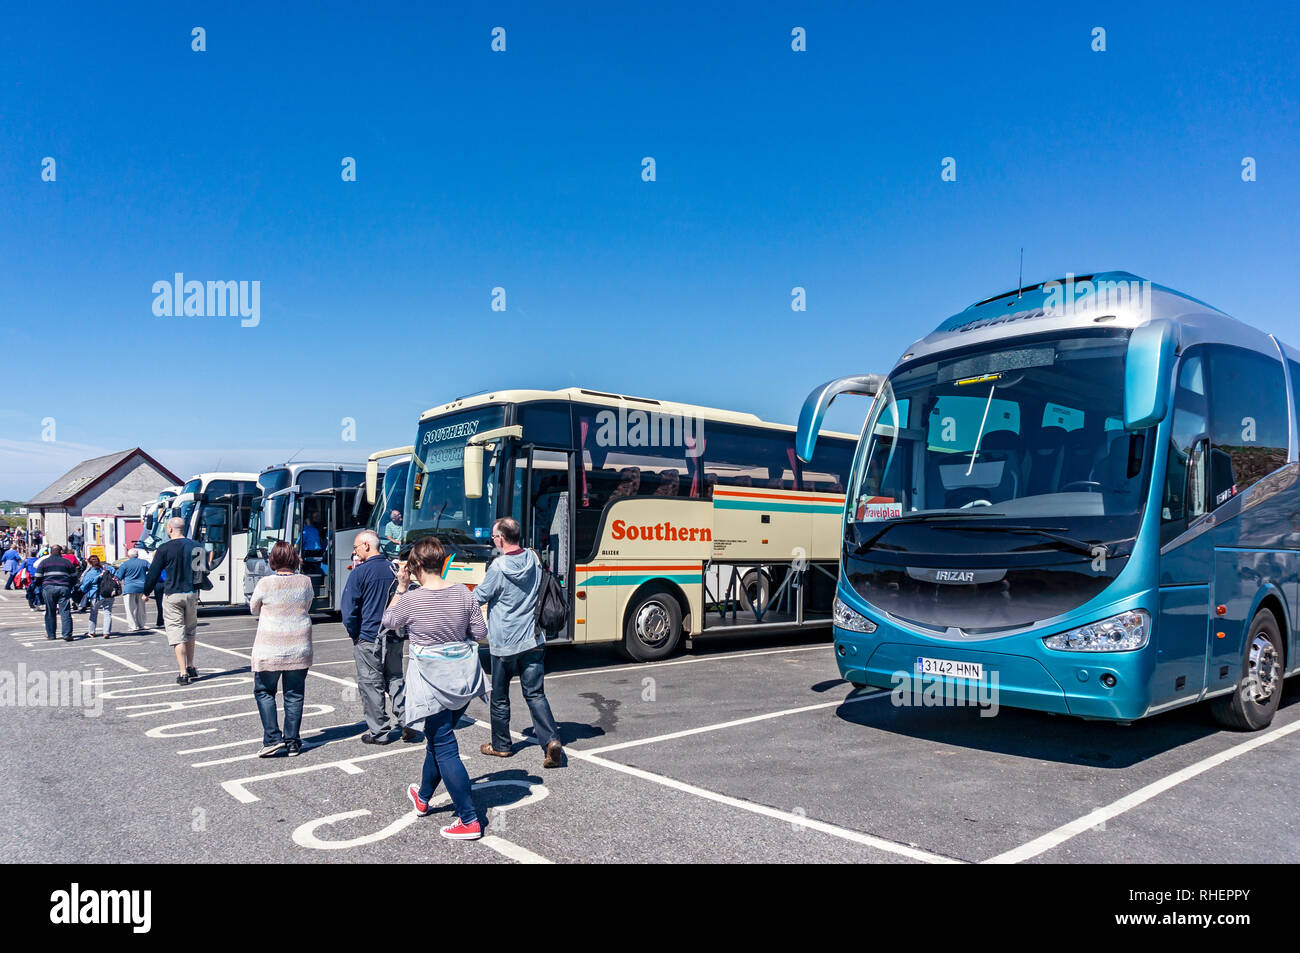 Kraftomnibusse mit Fahrgästen für Iona am Hafen in Fionnphort Mull Argyll & Bute Schottland Großbritannien geparkt Stockfoto